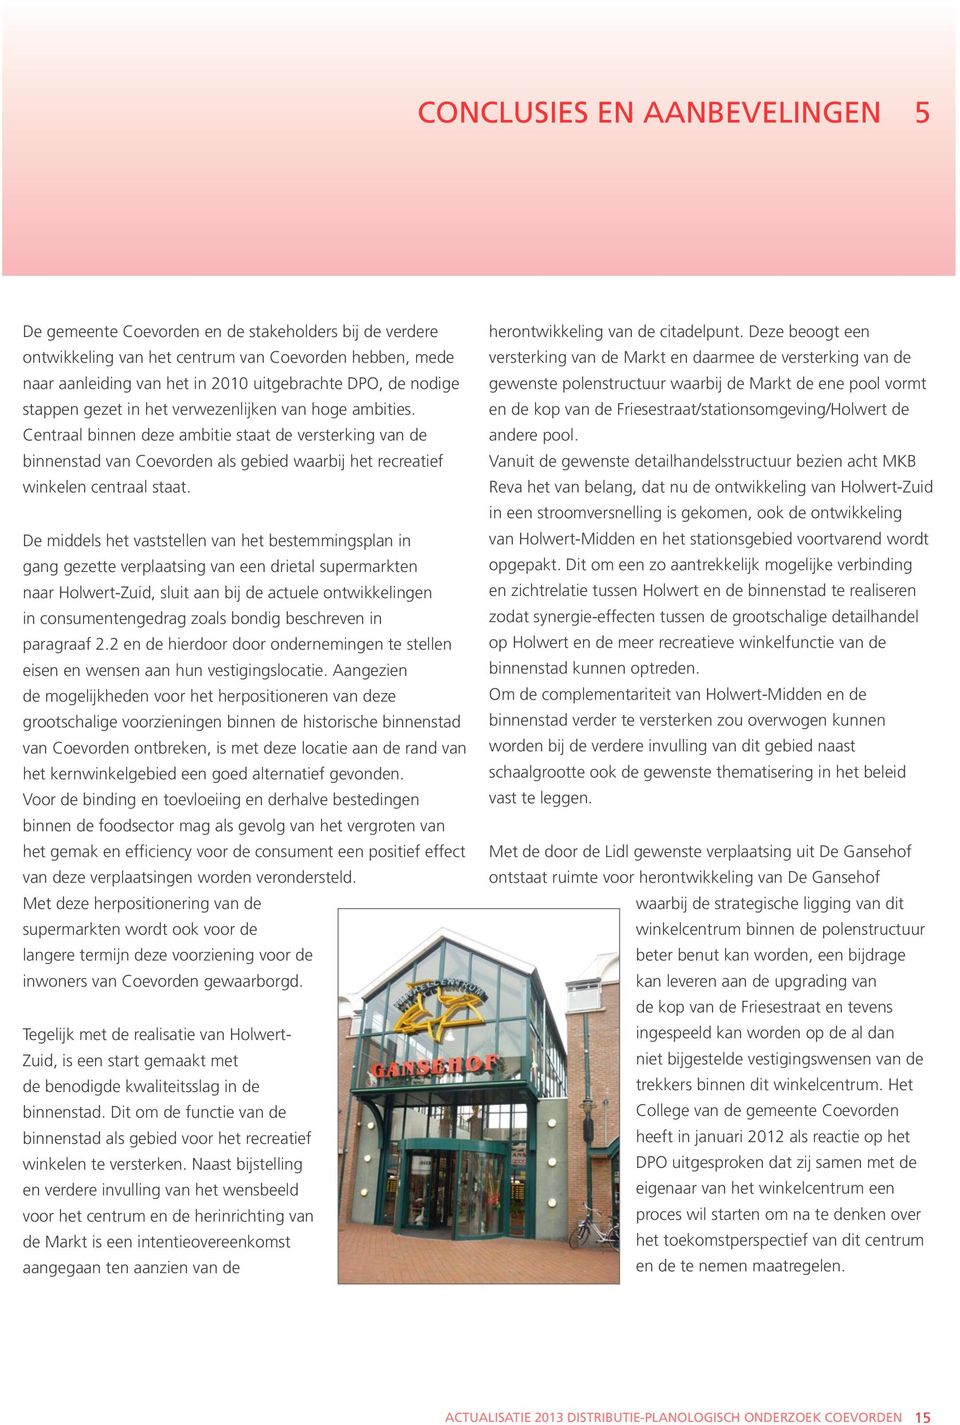 Centraal binnen deze ambitie staat de versterking van de binnenstad van Coevorden als gebied waarbij het recreatief winkelen centraal staat.